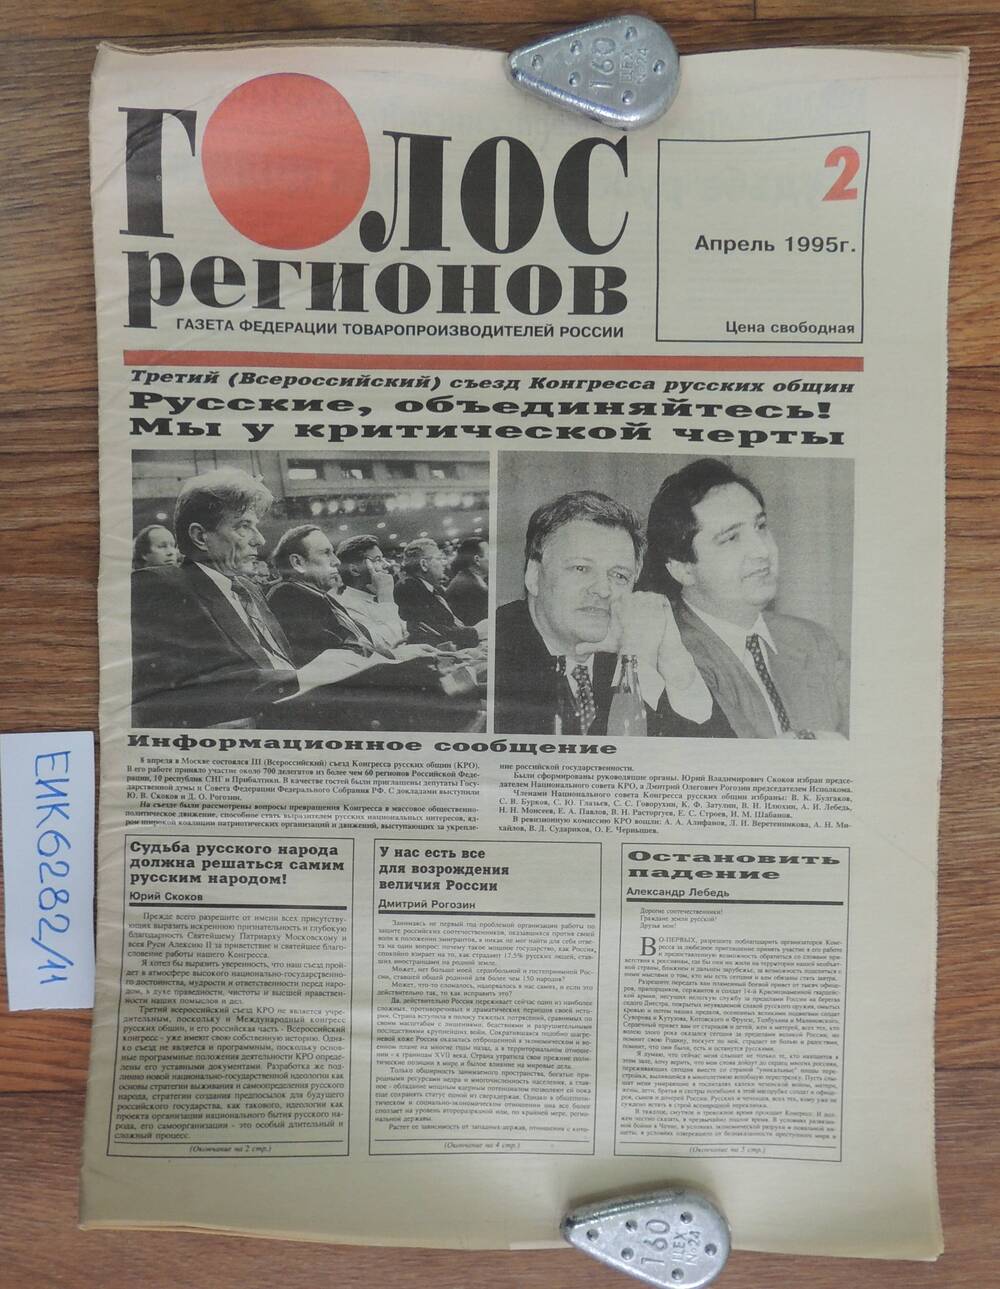 Газета «Голос регионов» газета федерации товаро- производителей России №2, апрель 1995г.